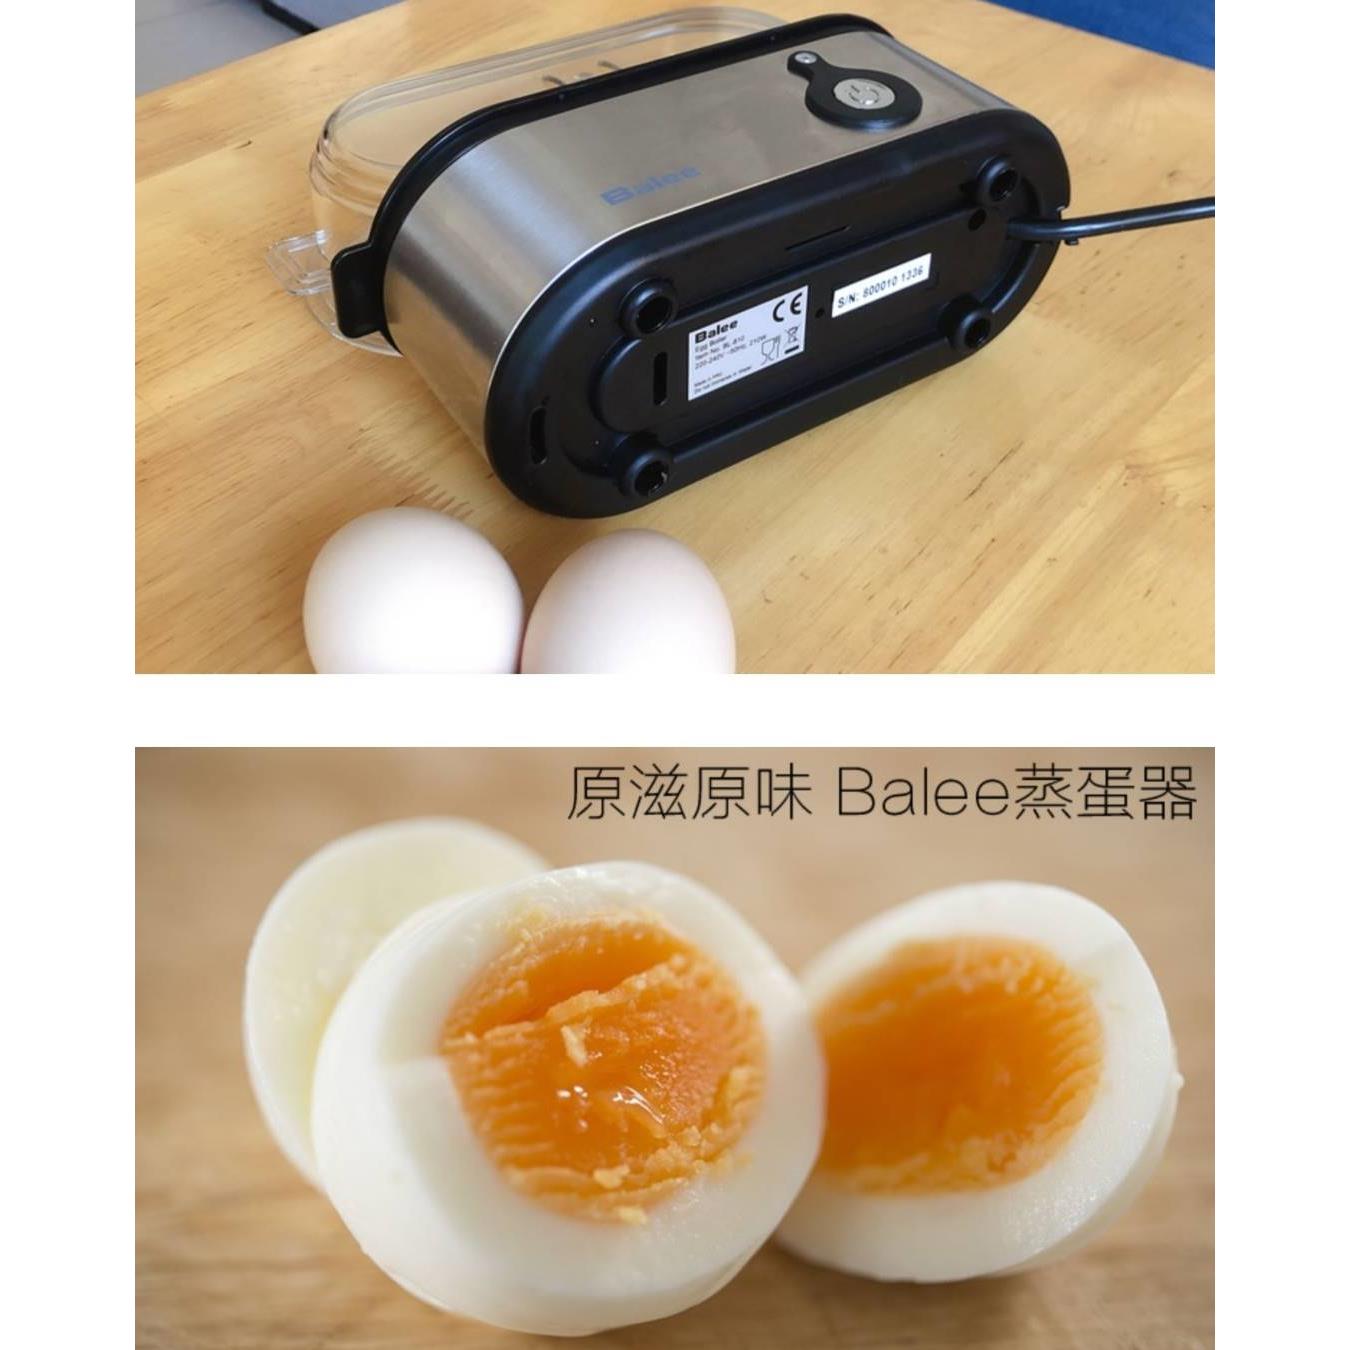 英国Balee原创煮蛋神器全自动断电蒸蛋机小型迷你3枚香港澳门台湾 - 图1